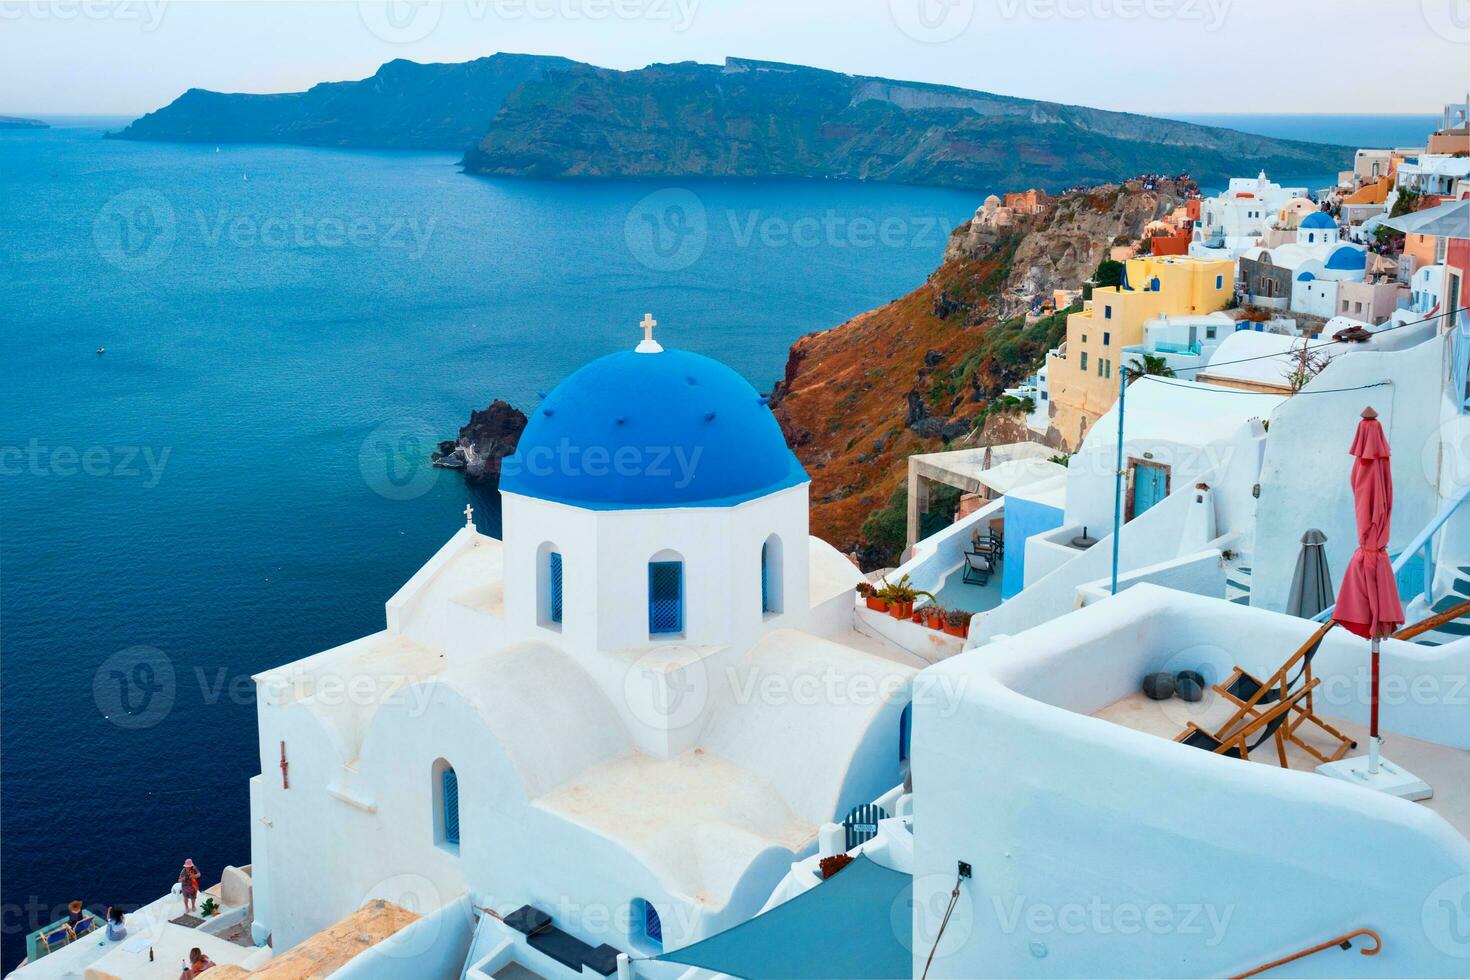 känd se från synpunkt av santorini oia by med blå kupol av grekisk ortodox kristen kyrka foto